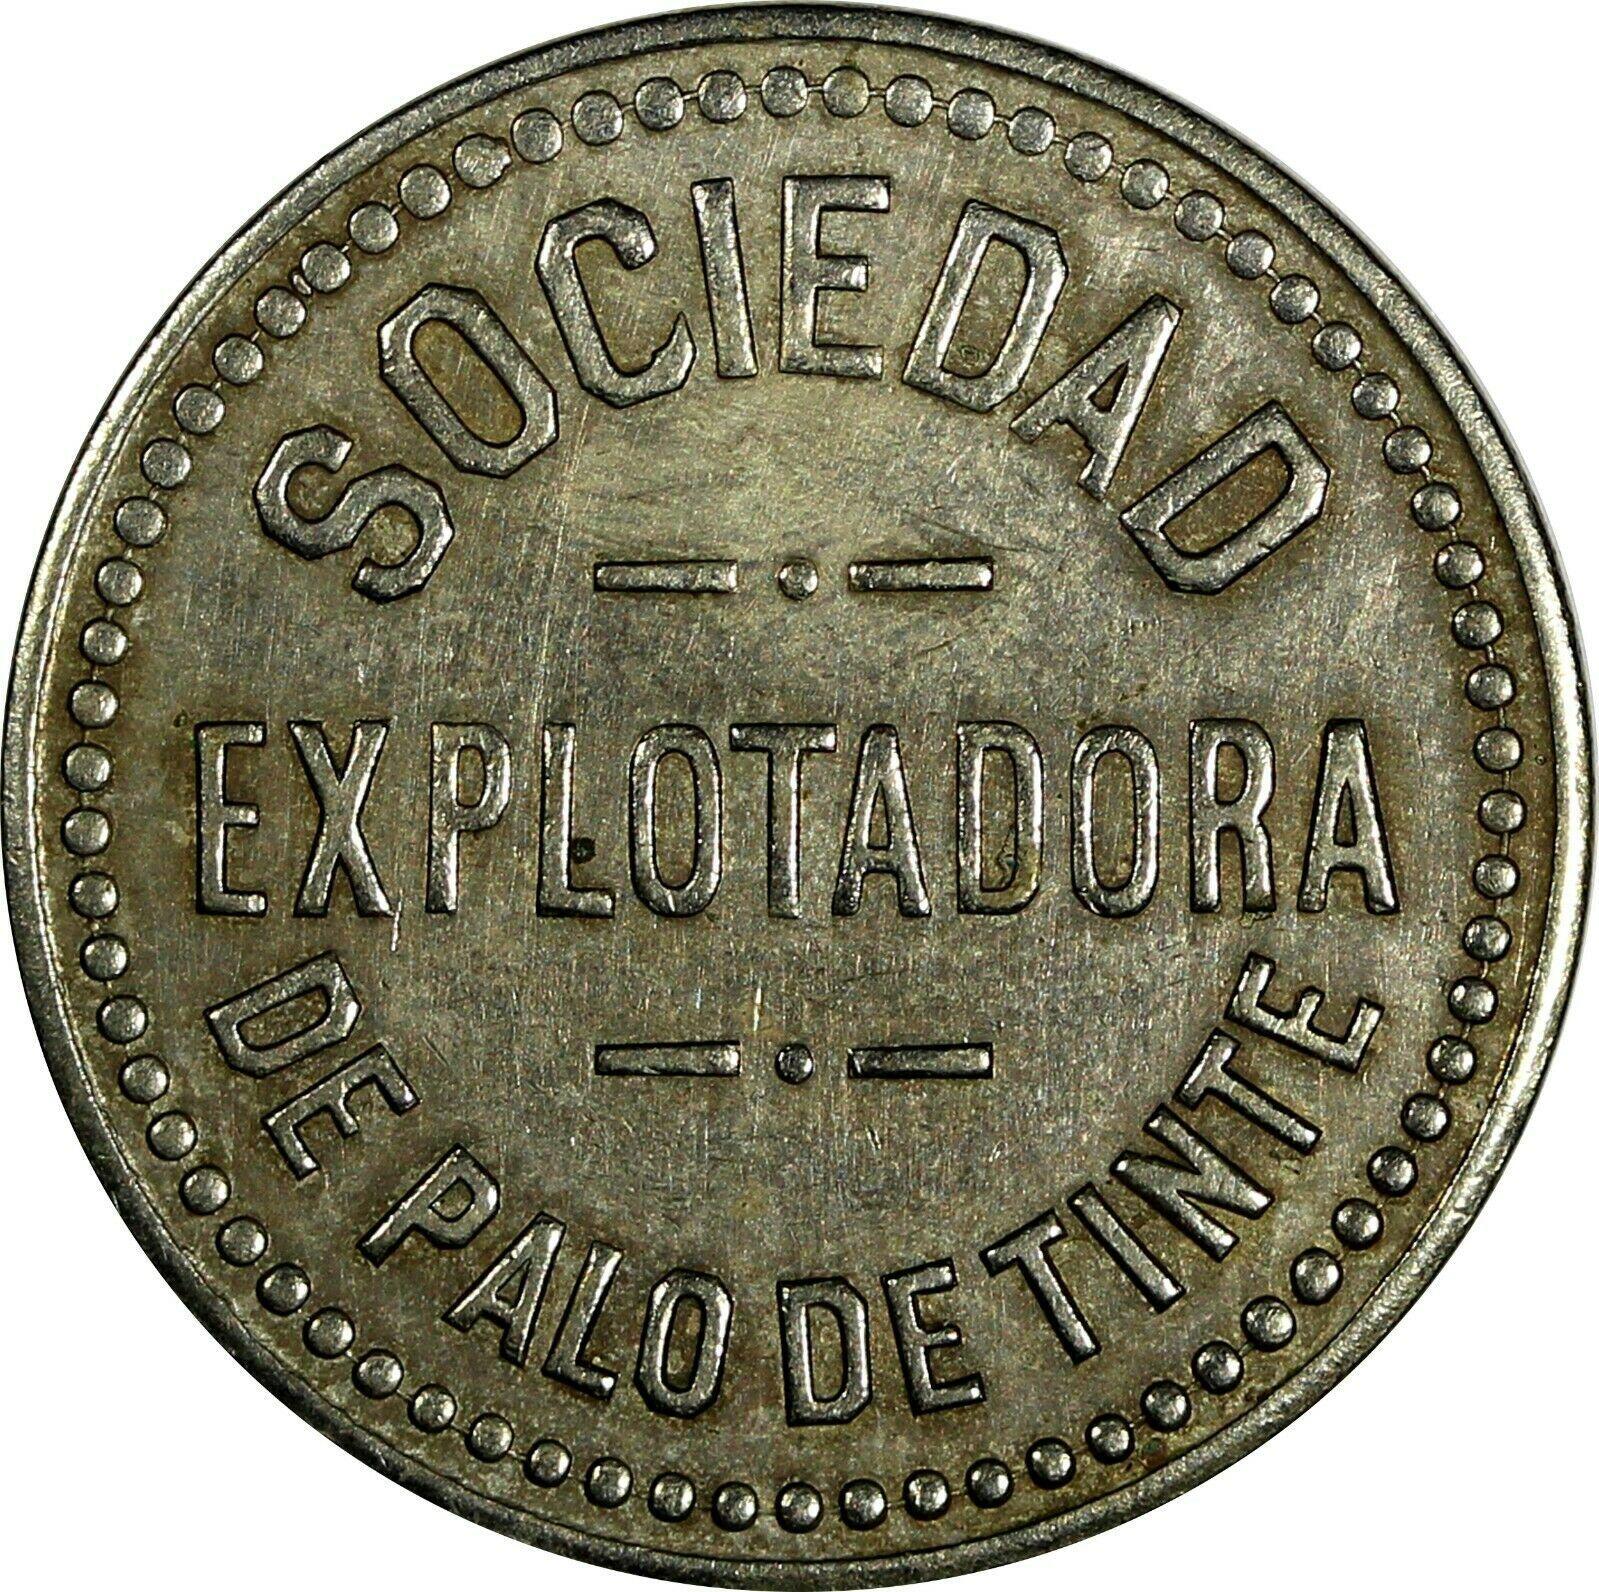 25 Centavos Mexico Token (1930) Sociedad Explotadora de ...